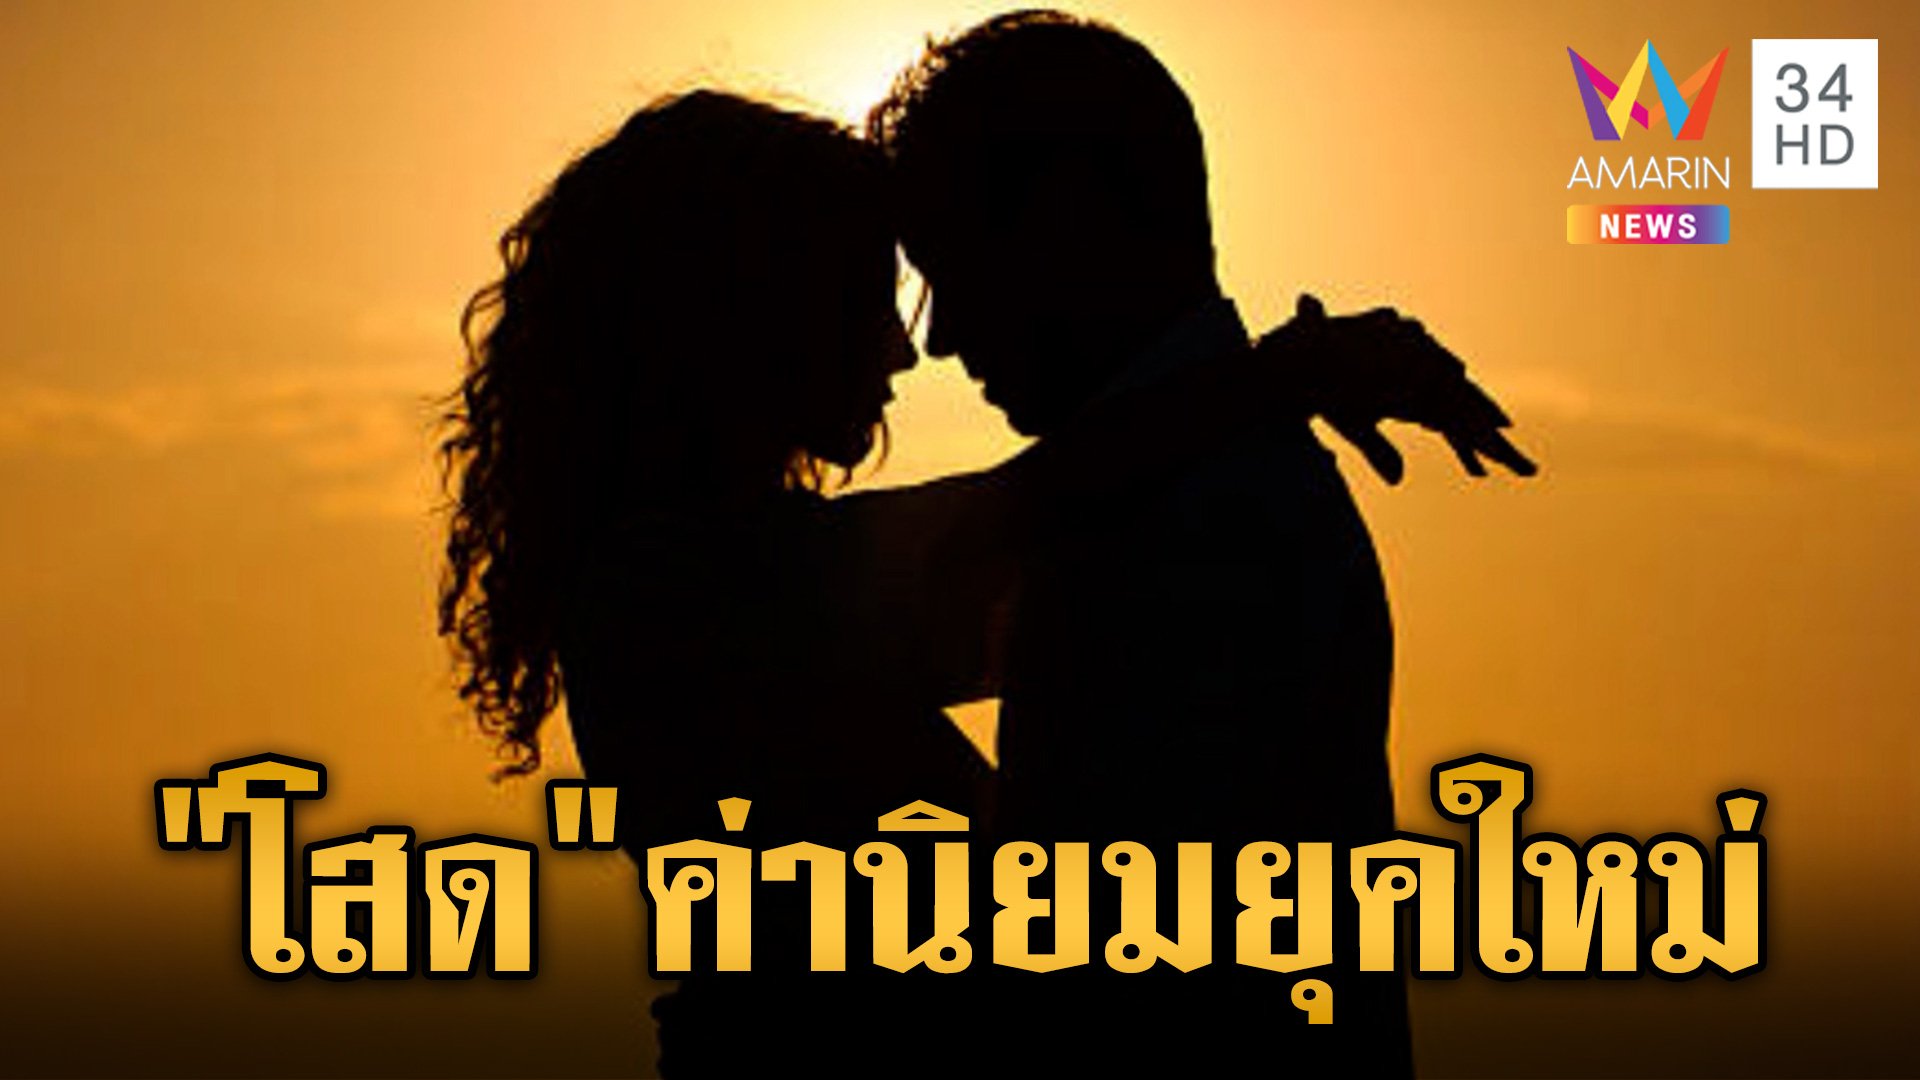 คนไทยอัตรา "คนโสด" พุ่งสูง ผู้หญิงไม่เดทกับผู้ชายที่เตี้ยกว่า ส่วนผู้ชายไม่ขอเดทกับผู้หญิงที่ผ่านการหย่าร้าง | ข่าวเย็นอมรินทร์ | 28 พ.ค. 67 | AMARIN TVHD34